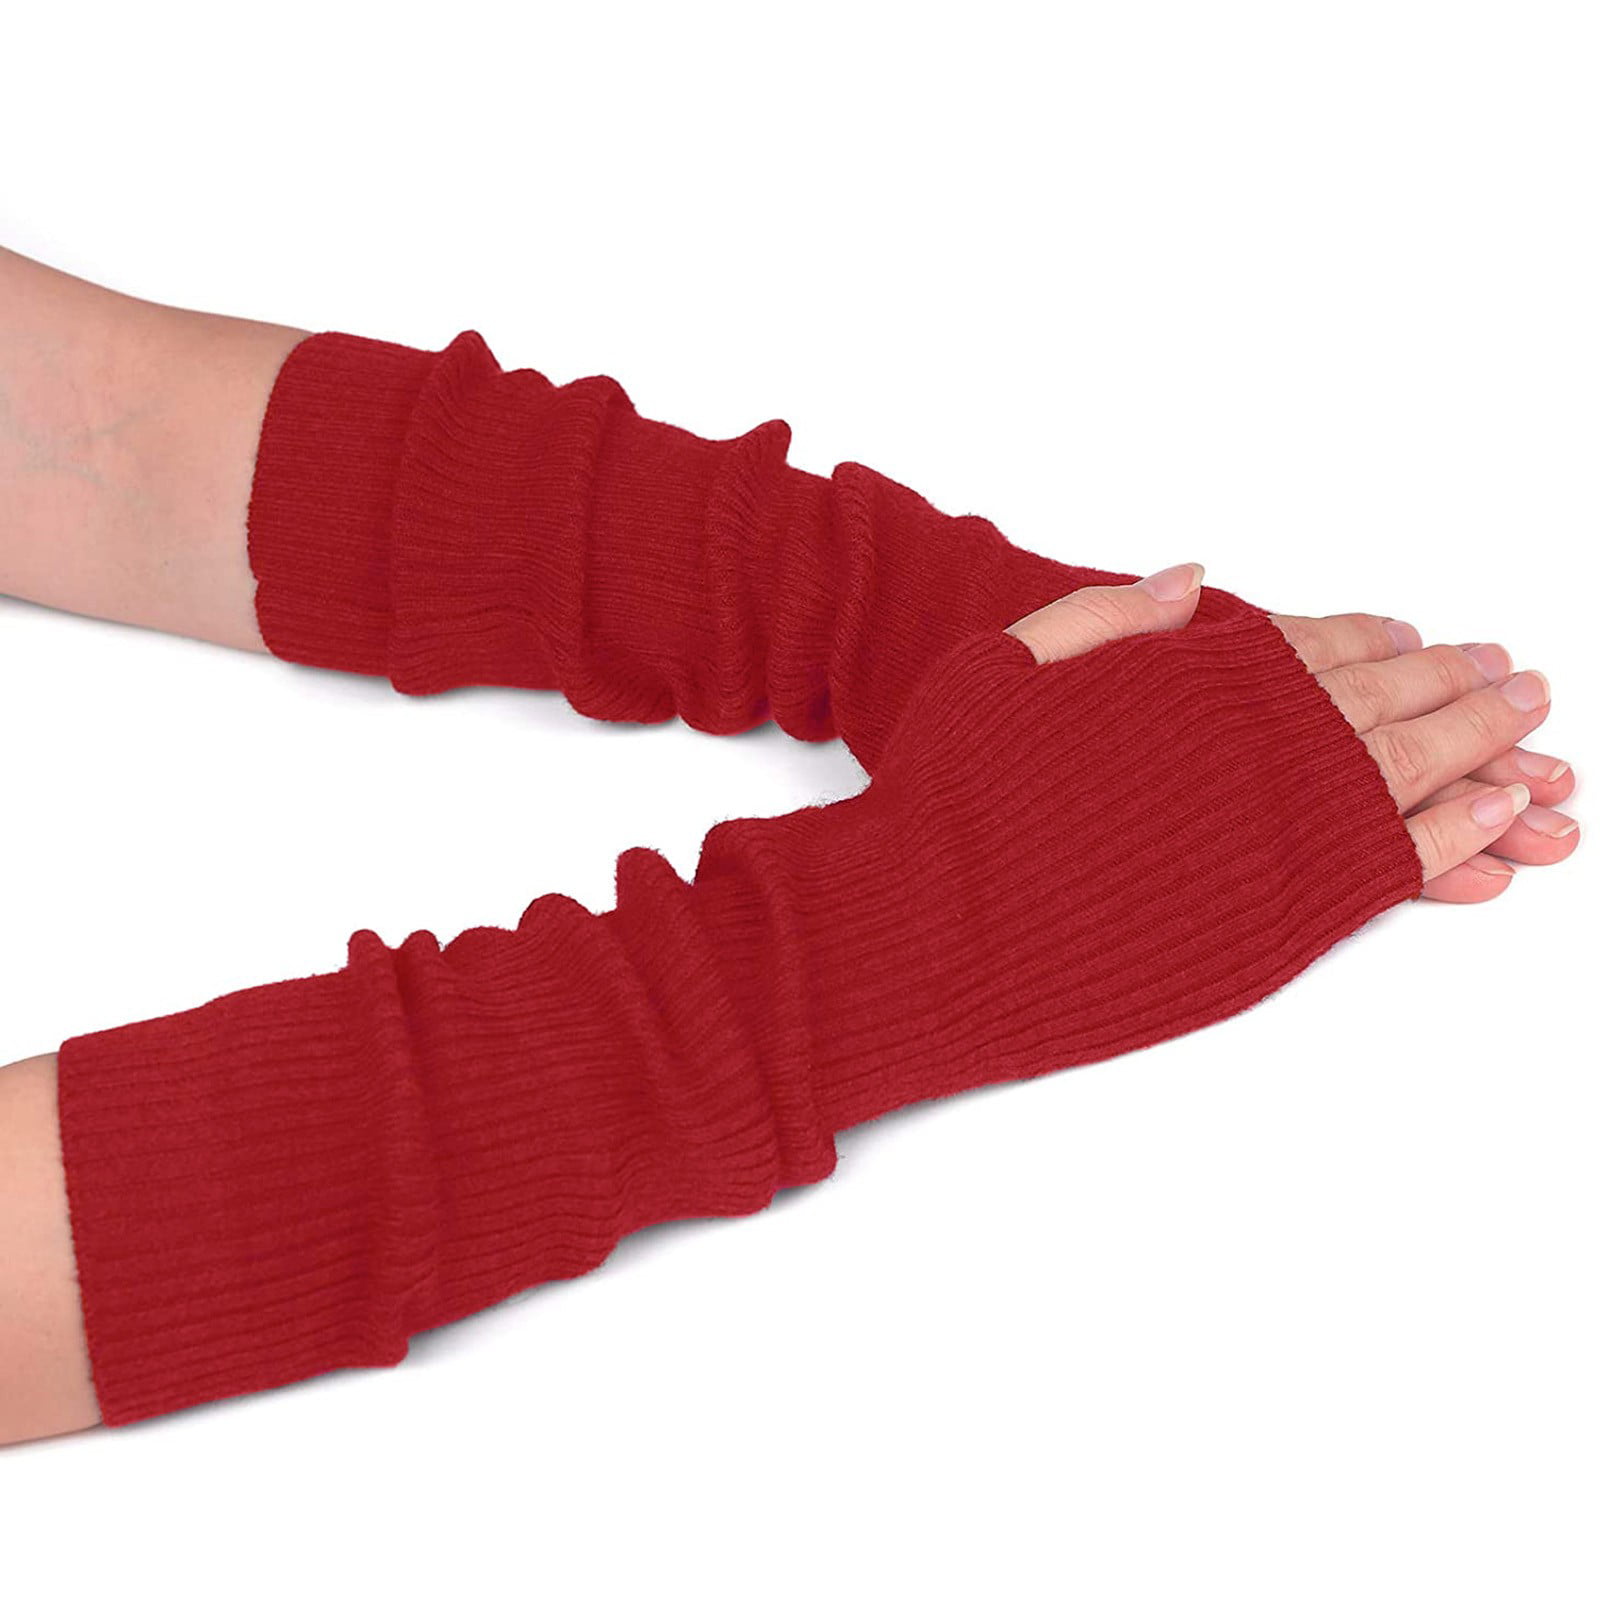 moshiko Fingerless Gloves cream weave pattern casual look Accessories Gloves Fingerless Gloves 